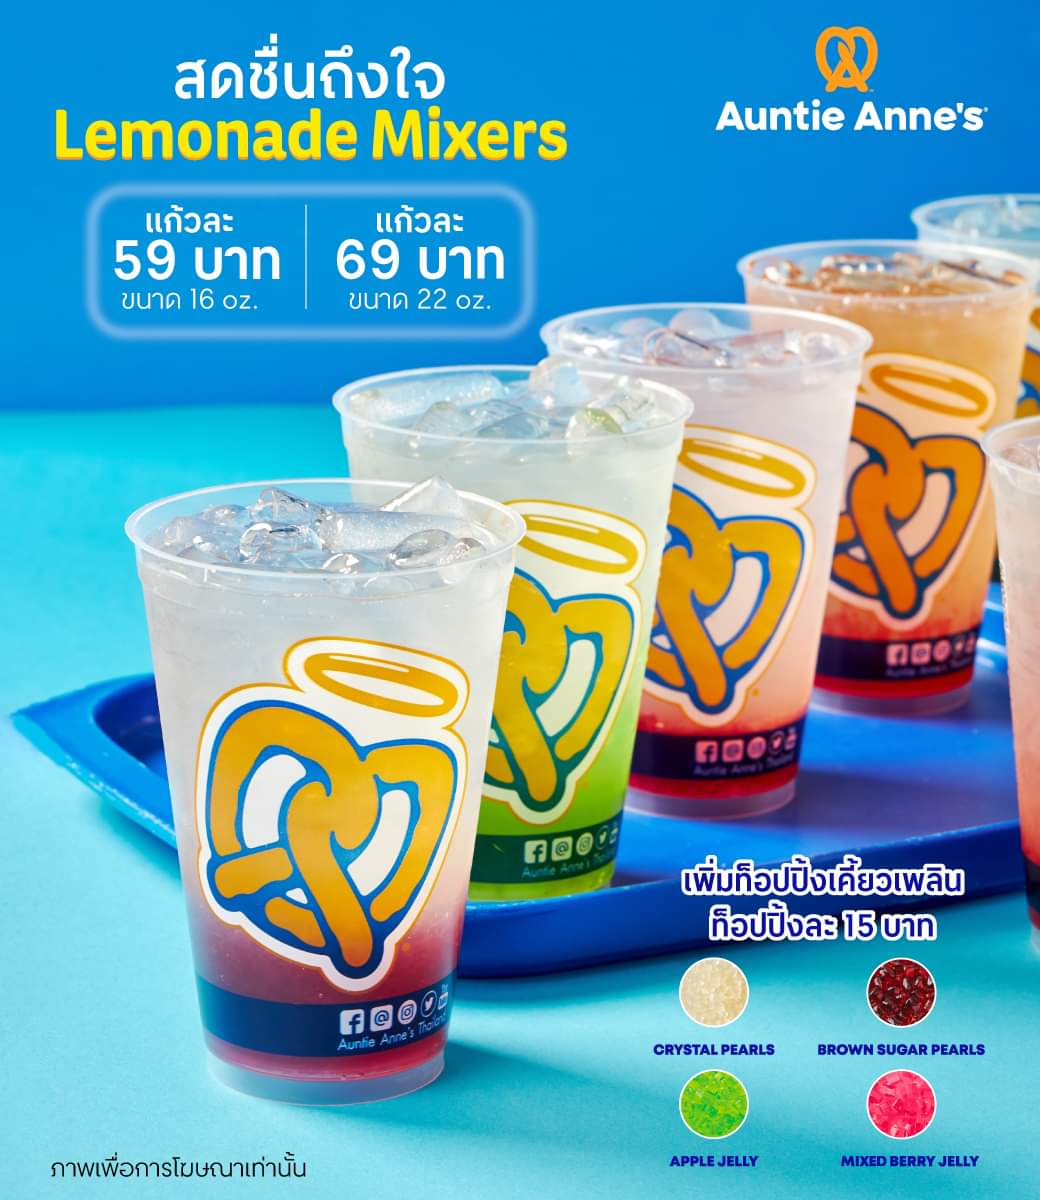 โปรโมชั่น อานตี้ แอนส์ : Lemonade Mixer สุดเฟรชจากอานตี้ แอนส์ เริ่มต้นเพียง 59บ.